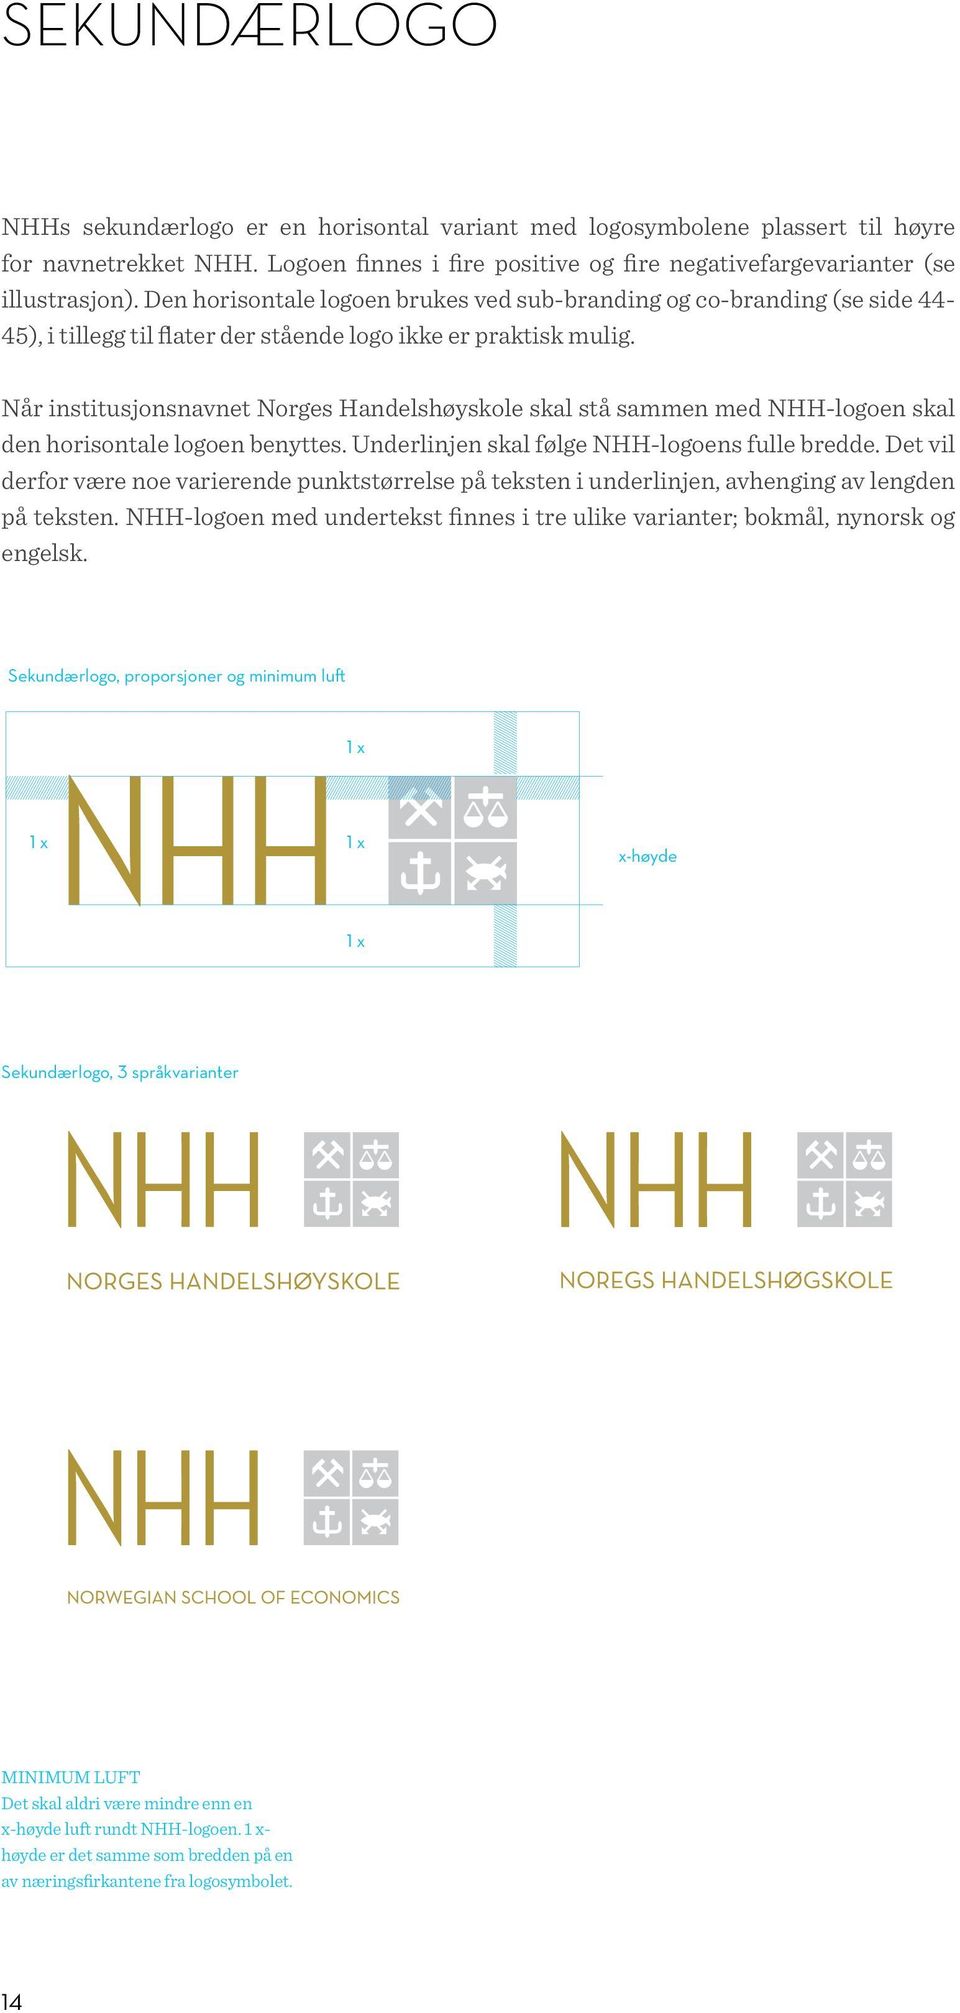 Når institusjonsnavnet Norges Handelshøyskole skal stå sammen med NHH-logoen skal den horisontale logoen benyttes. Underlinjen skal følge NHH-logoens fulle bredde.